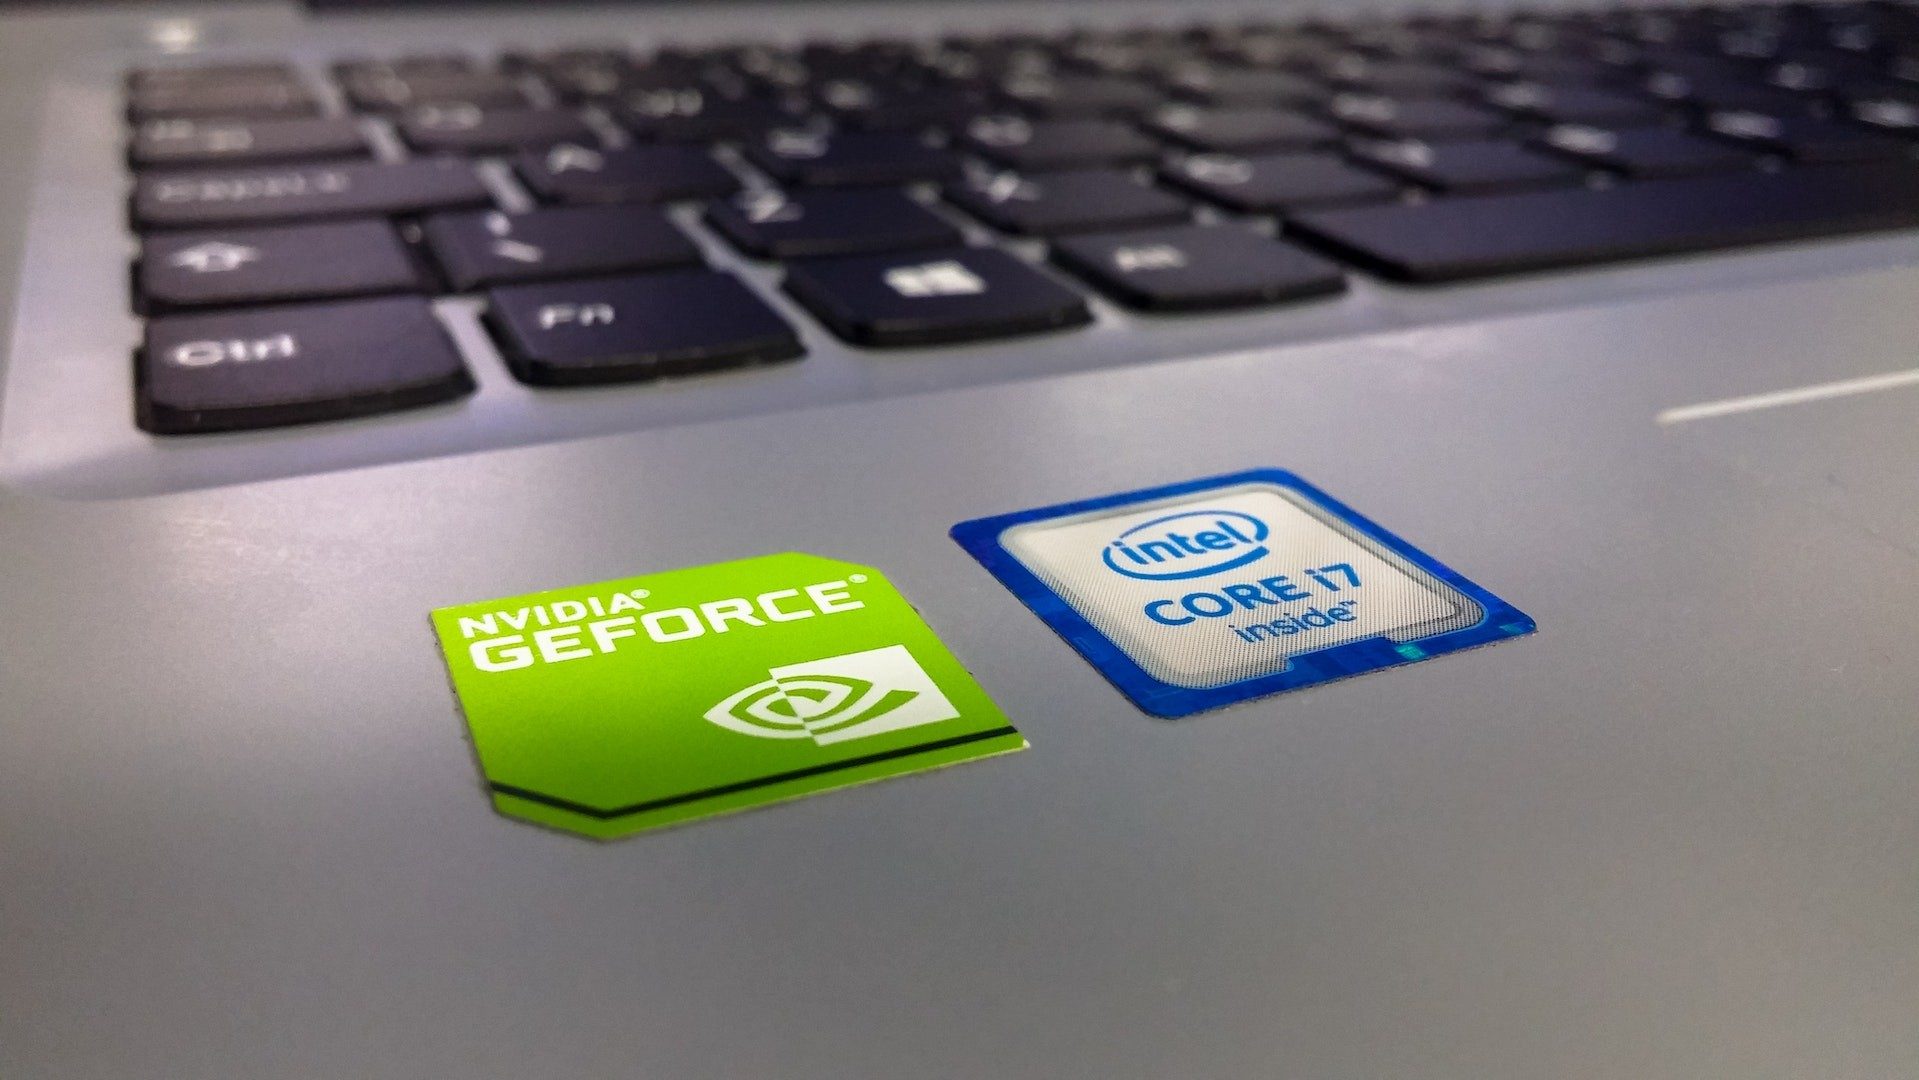 Sticker "Nvidia GeForce" und "intel inside" auf einem Laptop